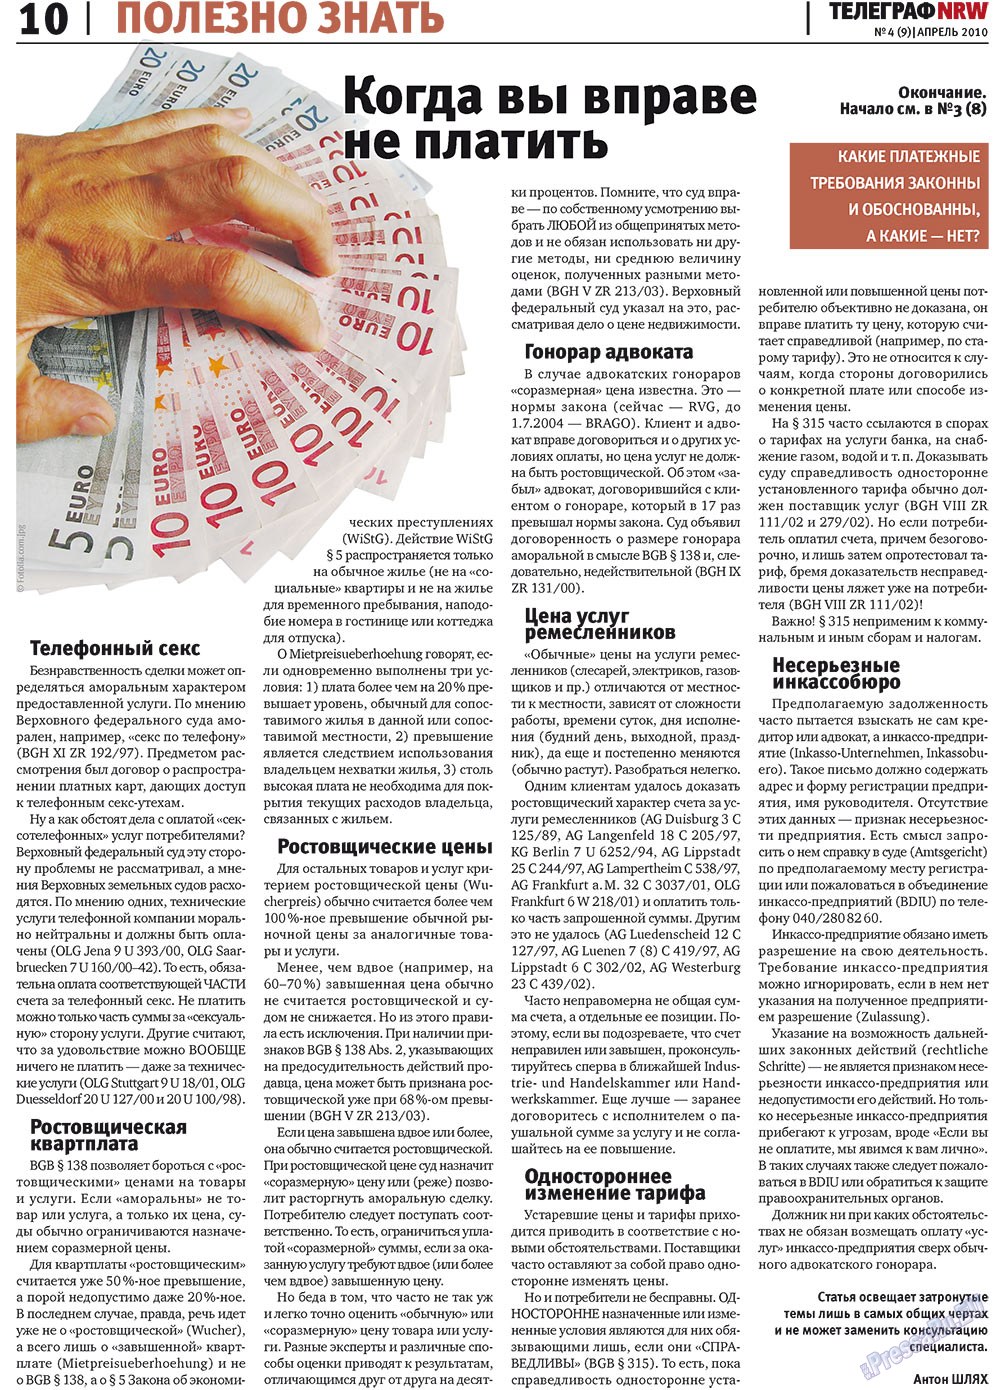 Телеграф NRW (газета). 2010 год, номер 4, стр. 10